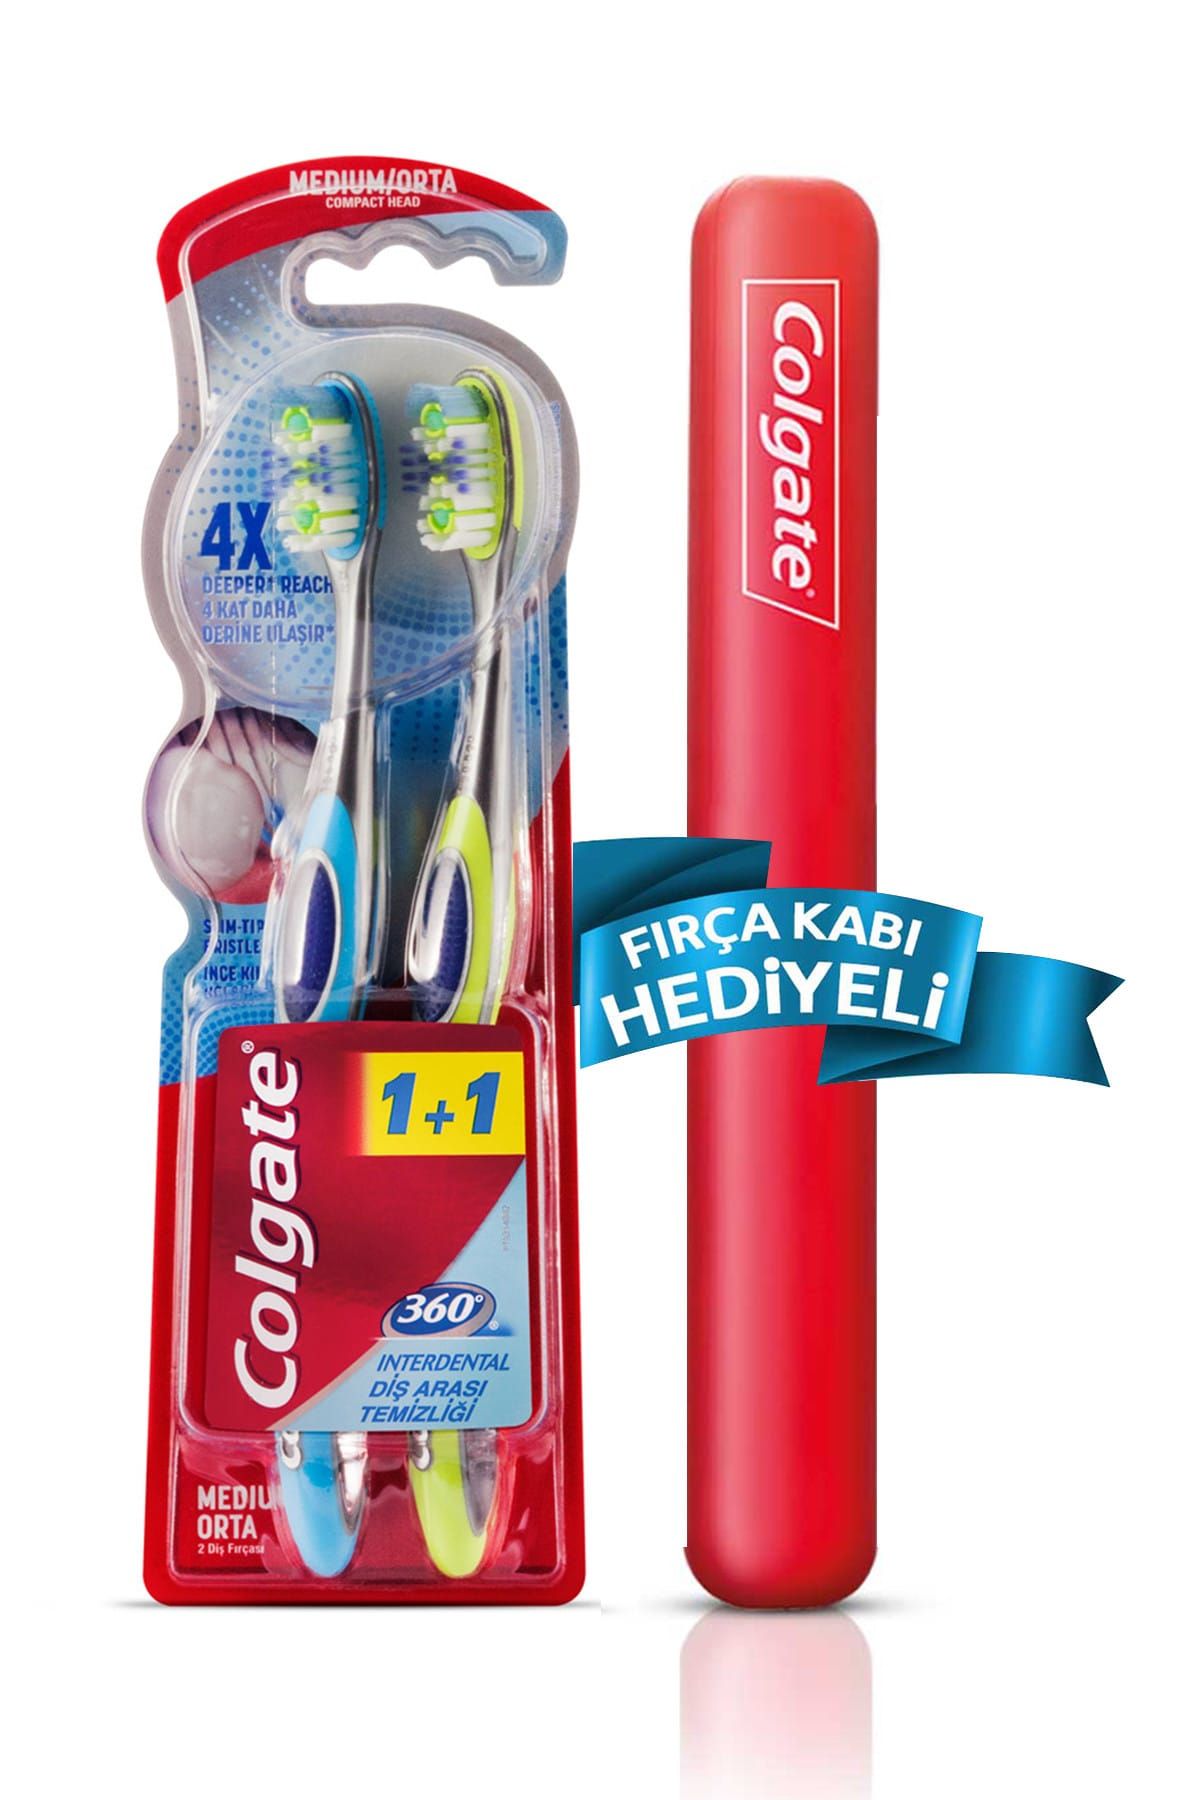 Colgate 360 Diş Arası Temizliği Dil ve Yanak Temizleyicili Orta Diş Fırçası 1+1 Fırça Kabı Hediye